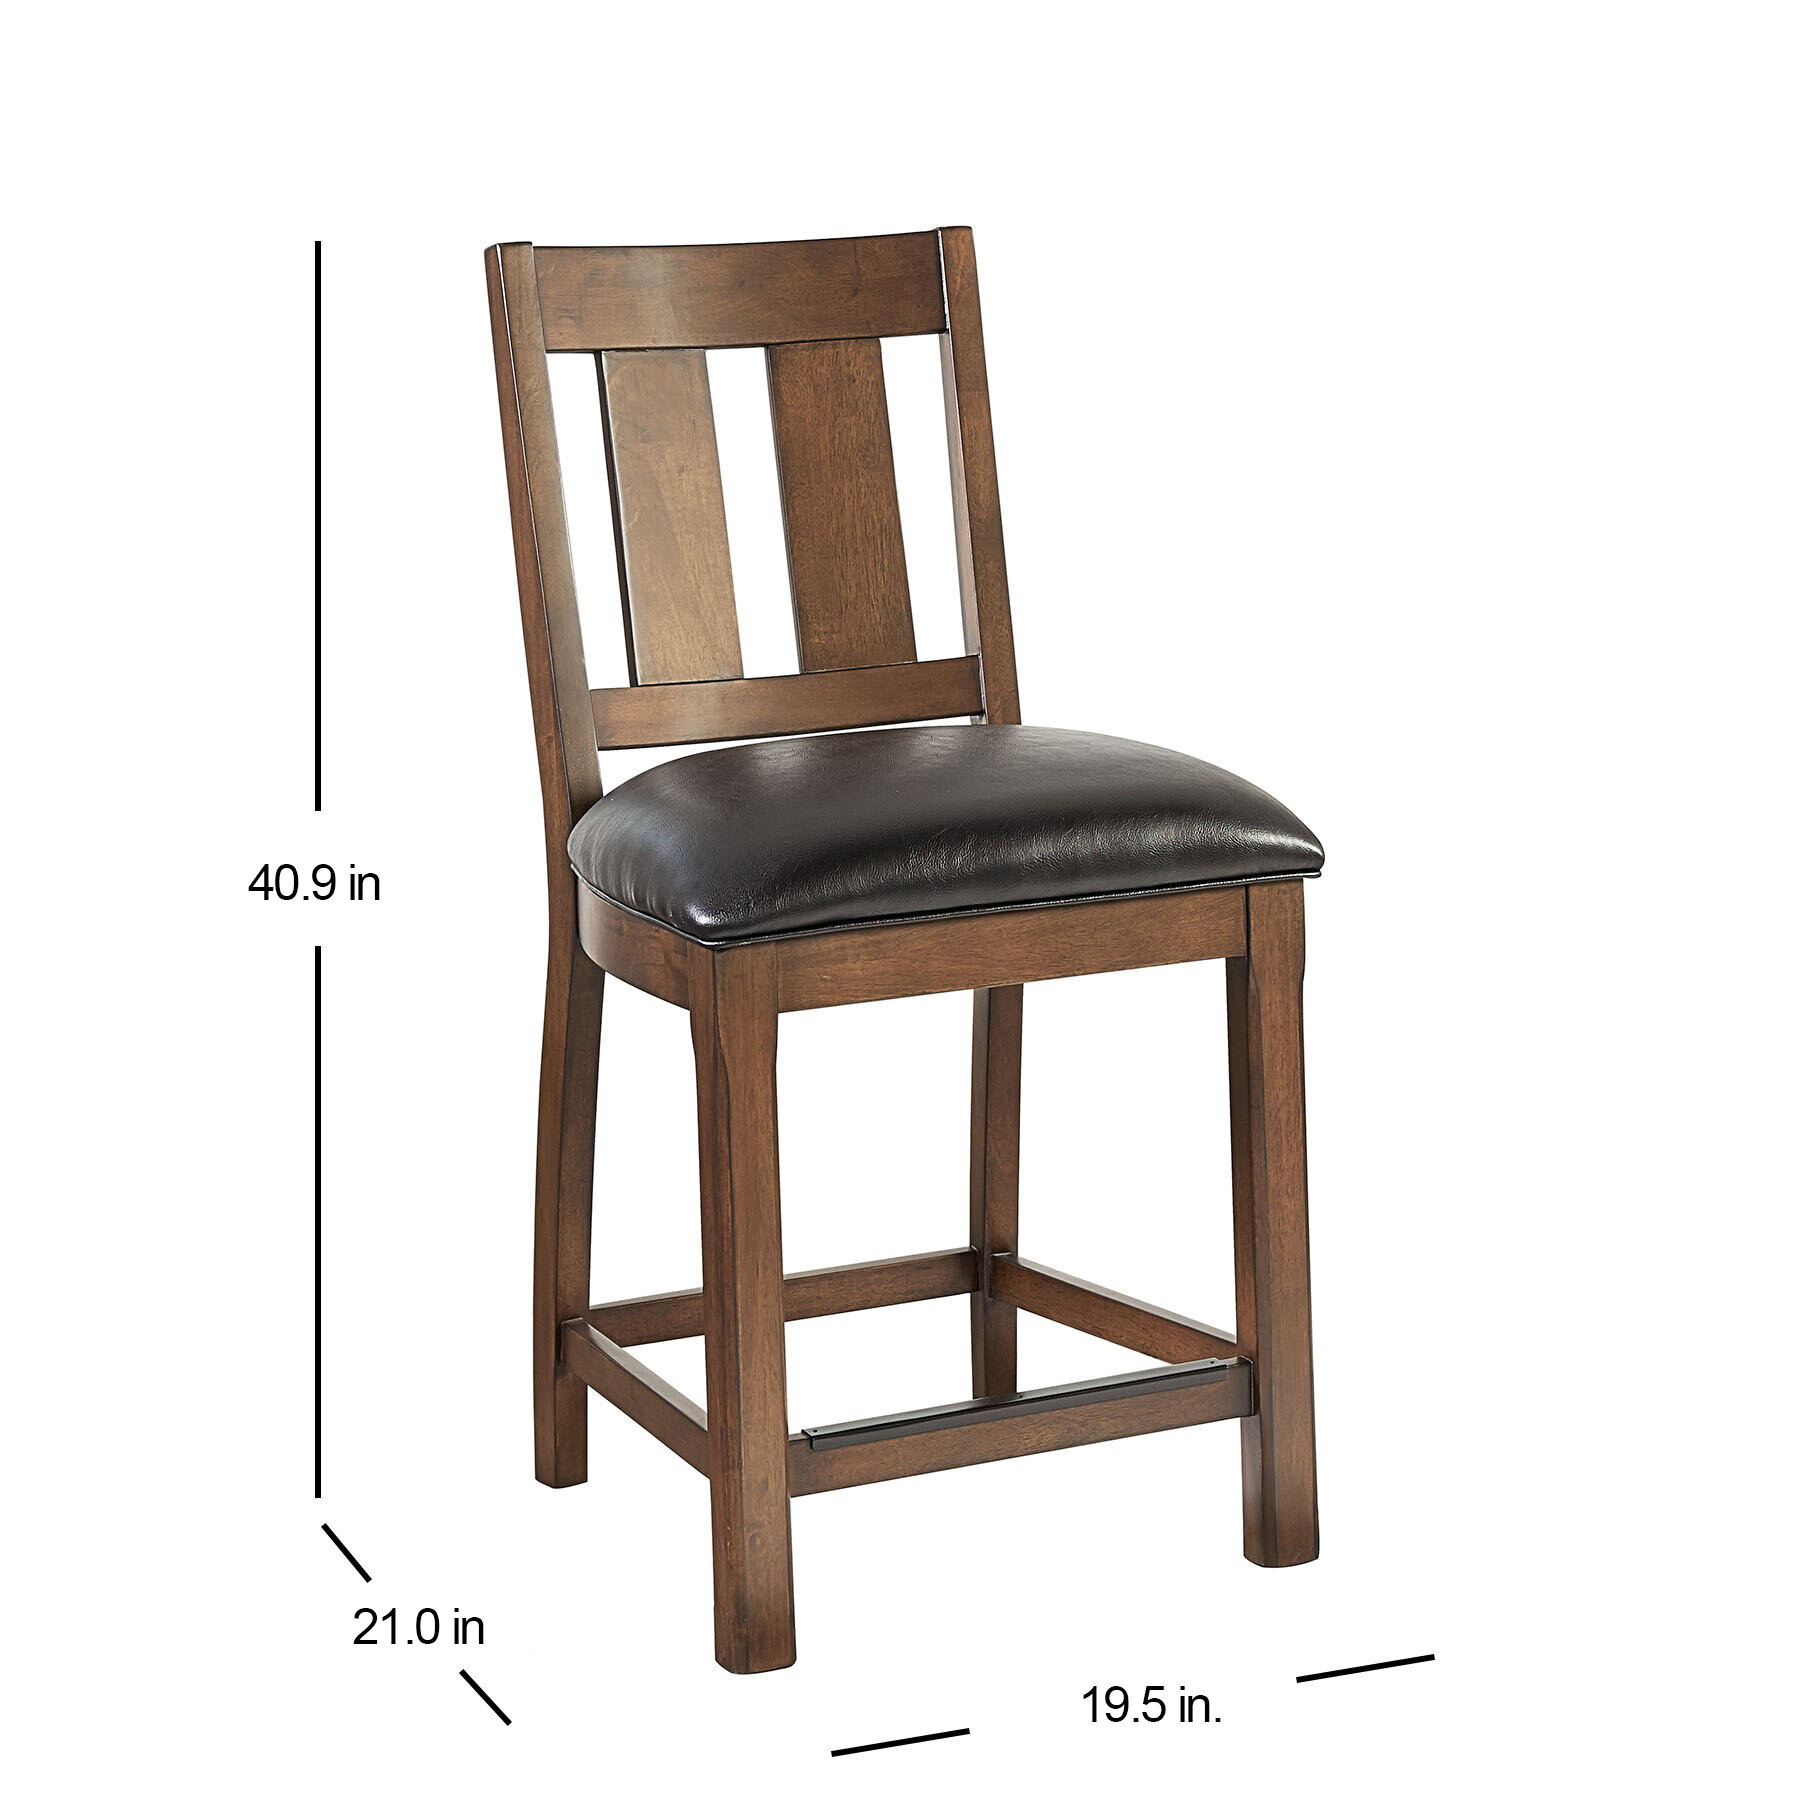 1325789 Chair Dims.jpg